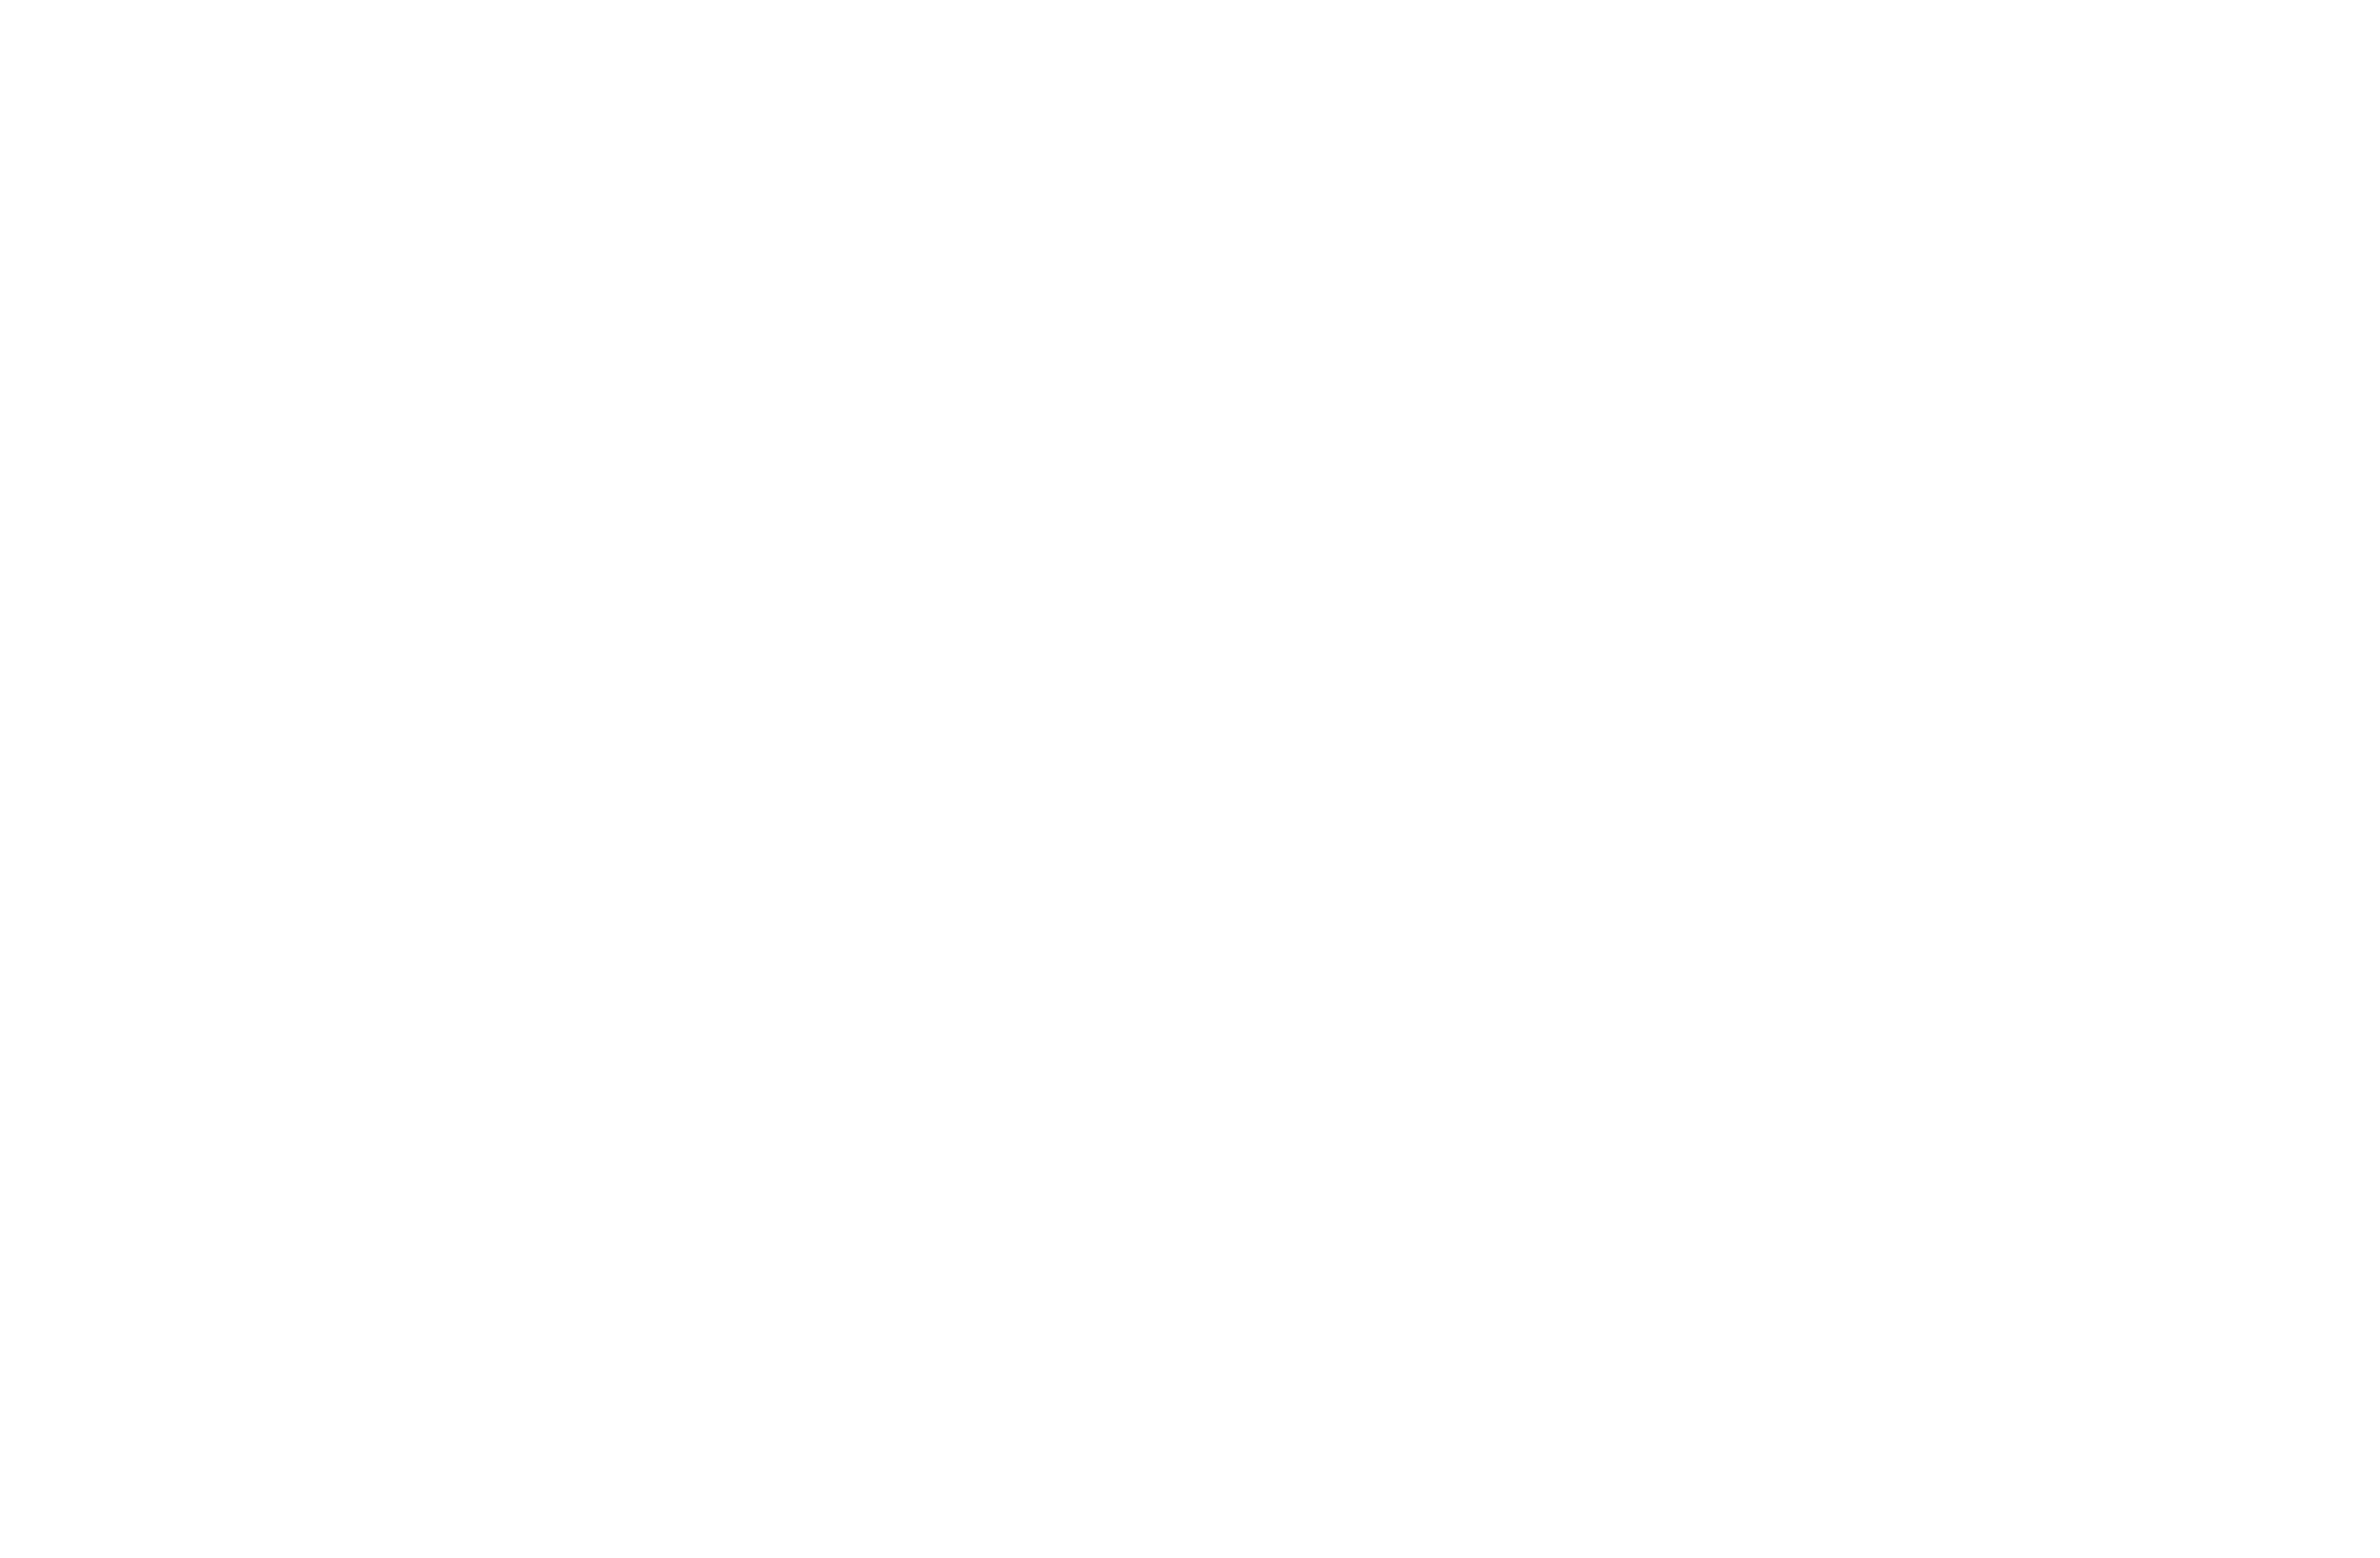 Moreways Healthcare®